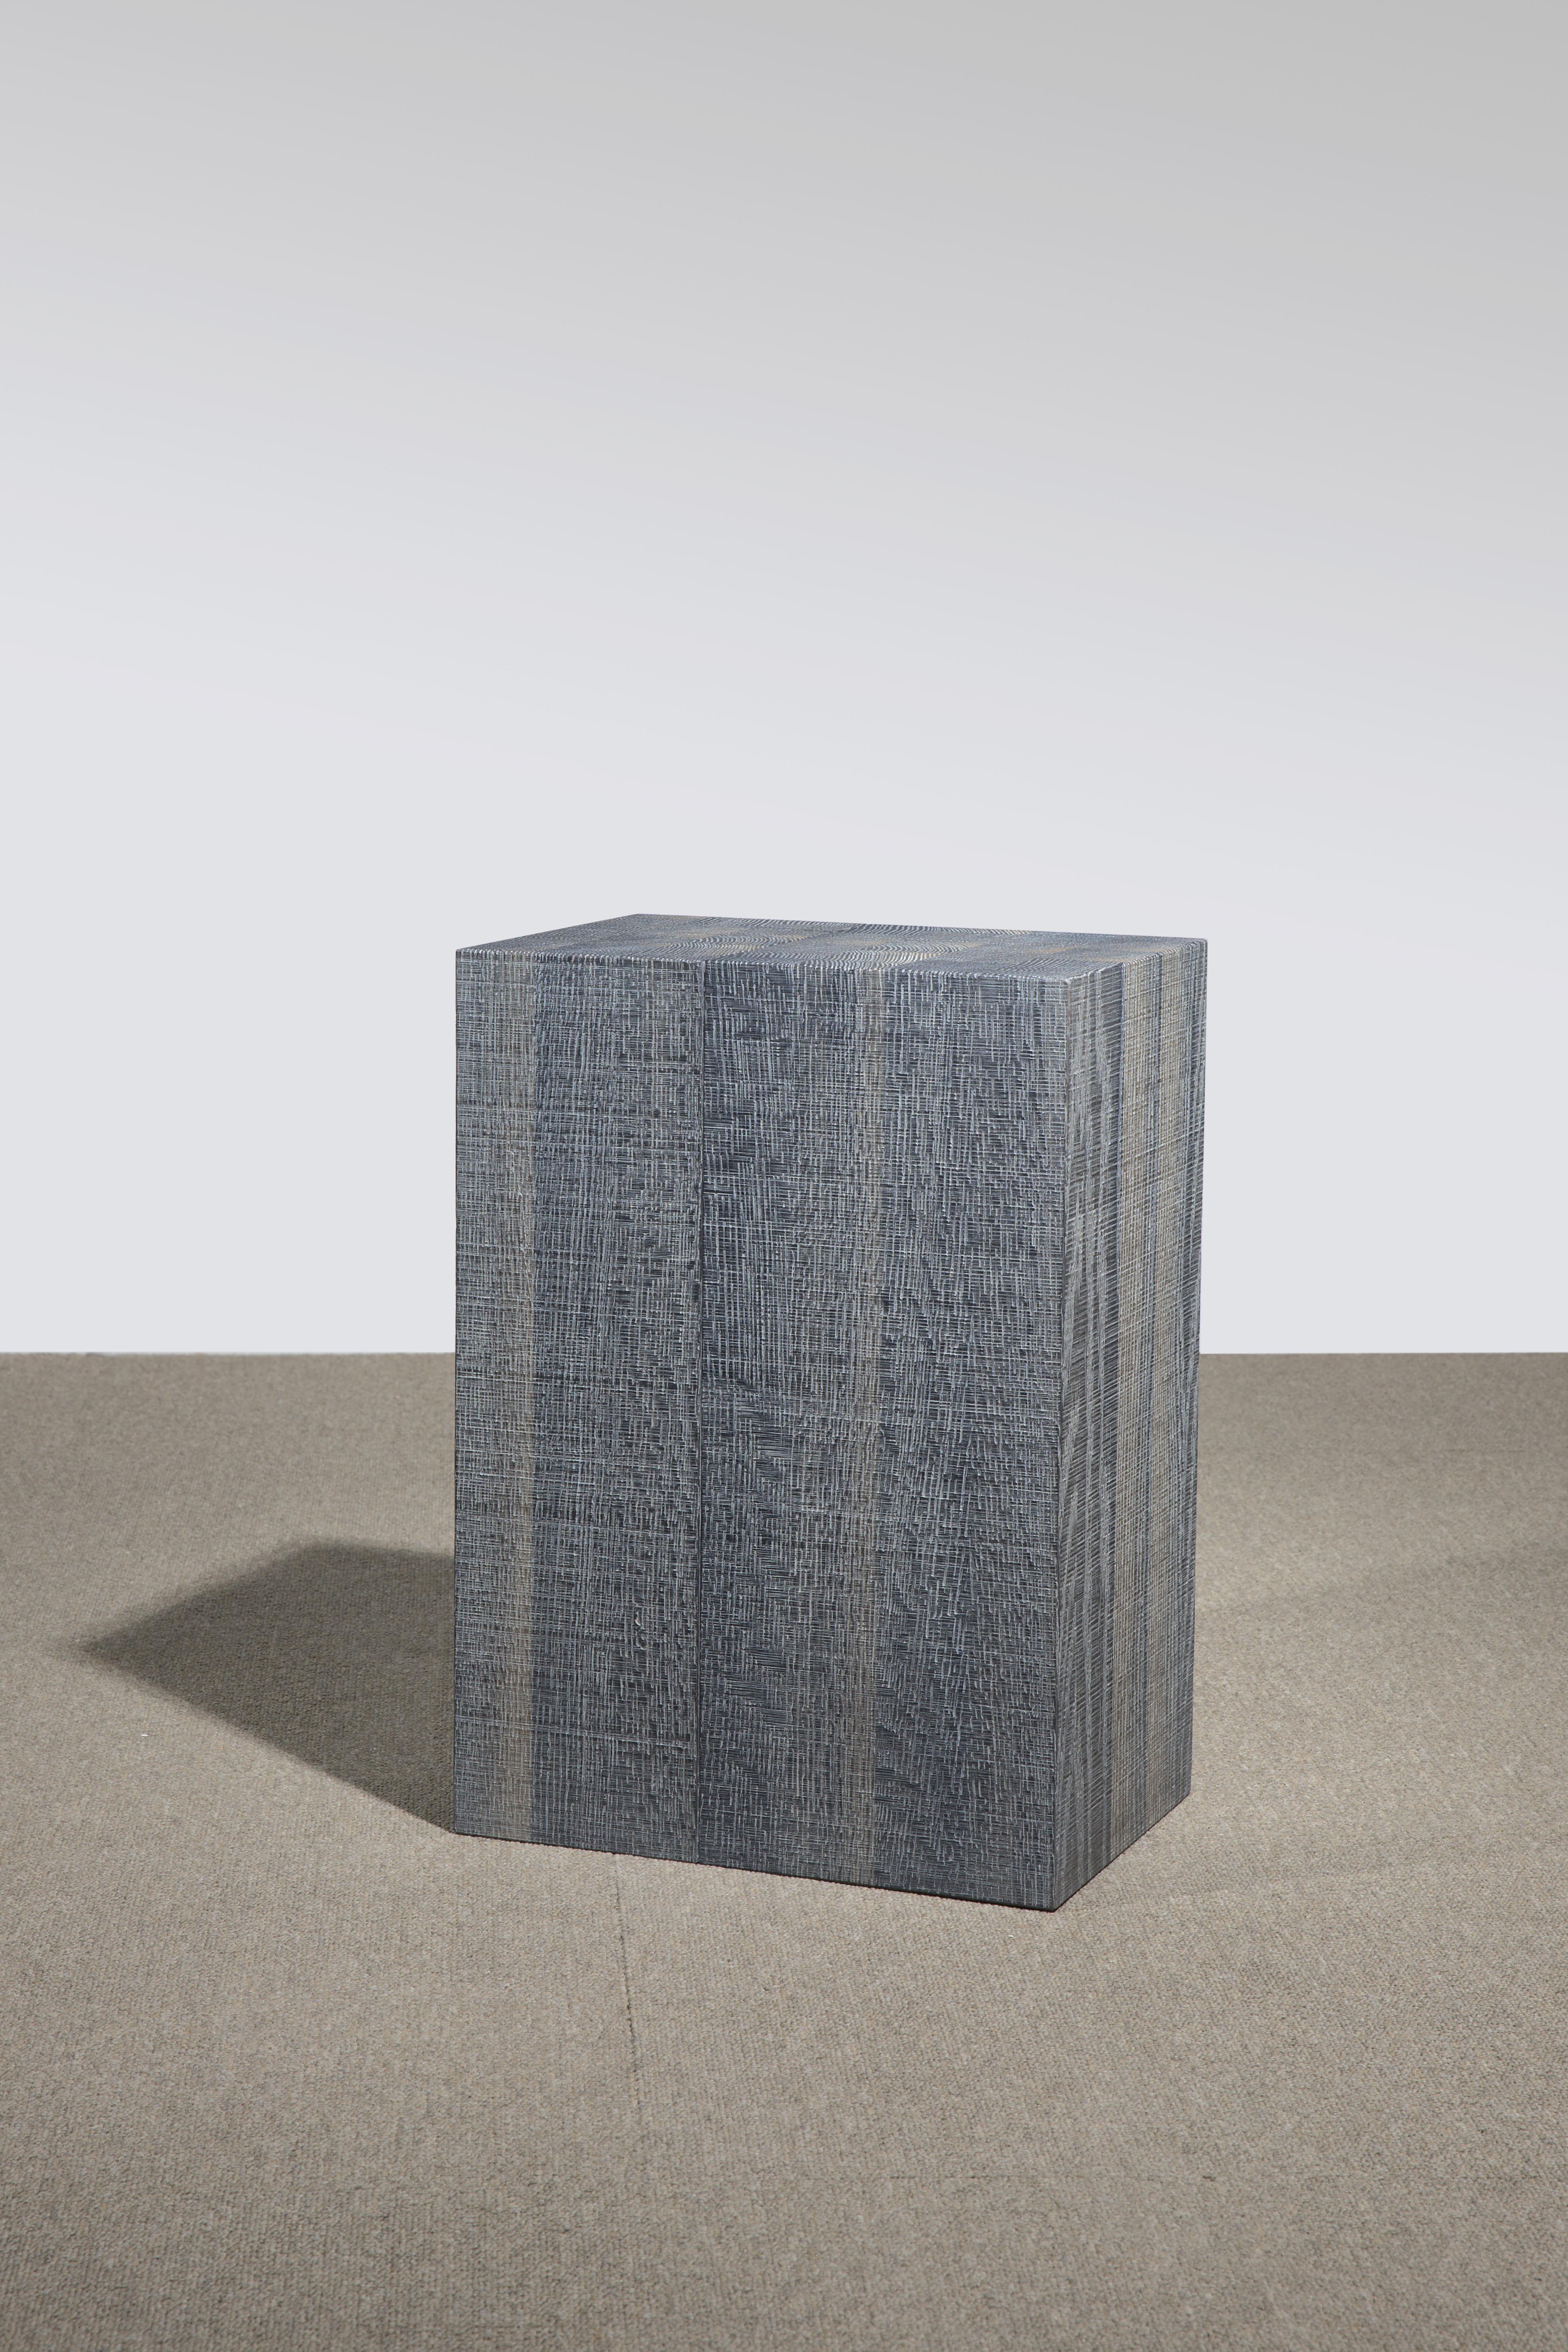 Tabouret en bois de chêne stratifié blanc II par Hyungshin Hwang
Dimensions : D 36 x L 27 x H 48 cm
MATERIAL : chêne rouge oxydé

Layered Series est le thème principal et le concept de l'œuvre de Can, qui poursuit son expérience basée sur la